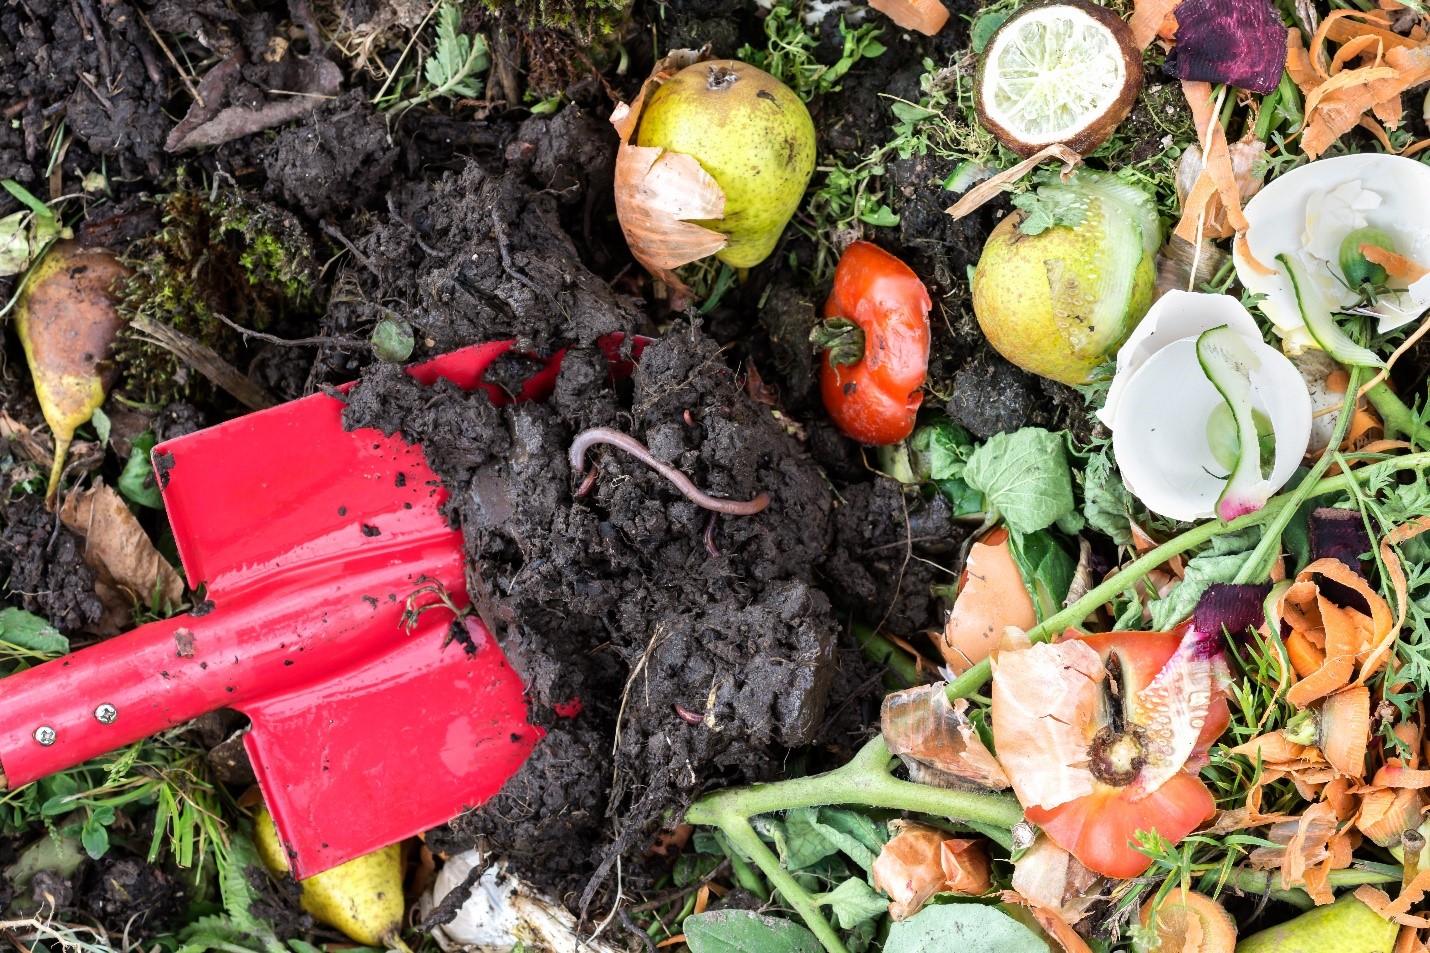 Làm phân trộn của riêng bạn Tiết kiệm trái cây và rau củ quả, báo, cỏ xén và các vật liệu có thể phân hủy khác. Sử dụng chúng để bắt đầu một thùng hoặc đống phân trộn. Thỉnh thoảng thêm một chút nước và đảo đống phân của bạn để đẩy nhanh quá trình ủ phân.